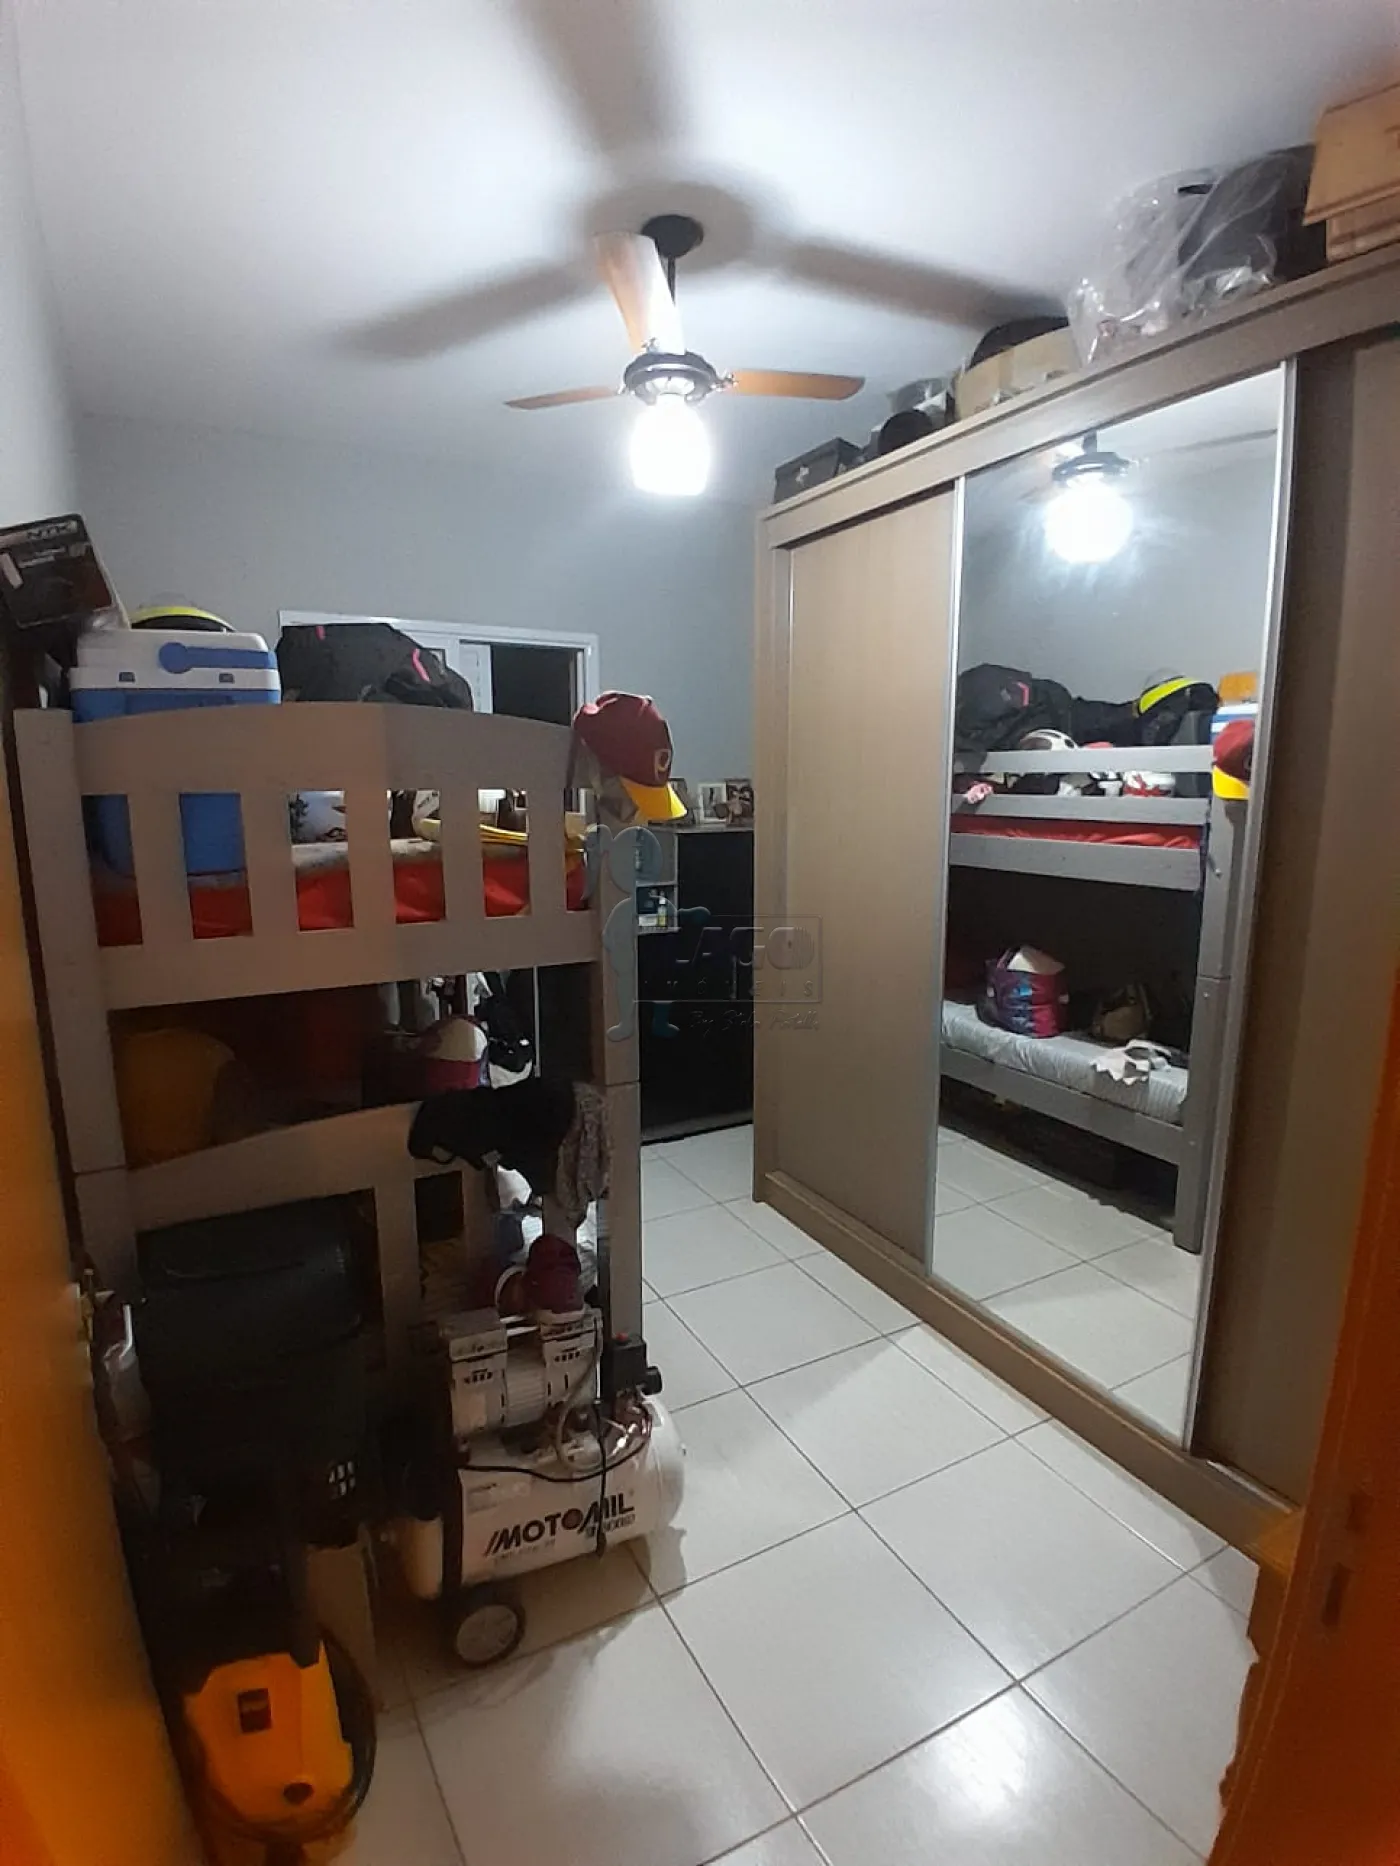 Alugar Apartamentos / Padrão em Ribeirão Preto R$ 950,00 - Foto 12